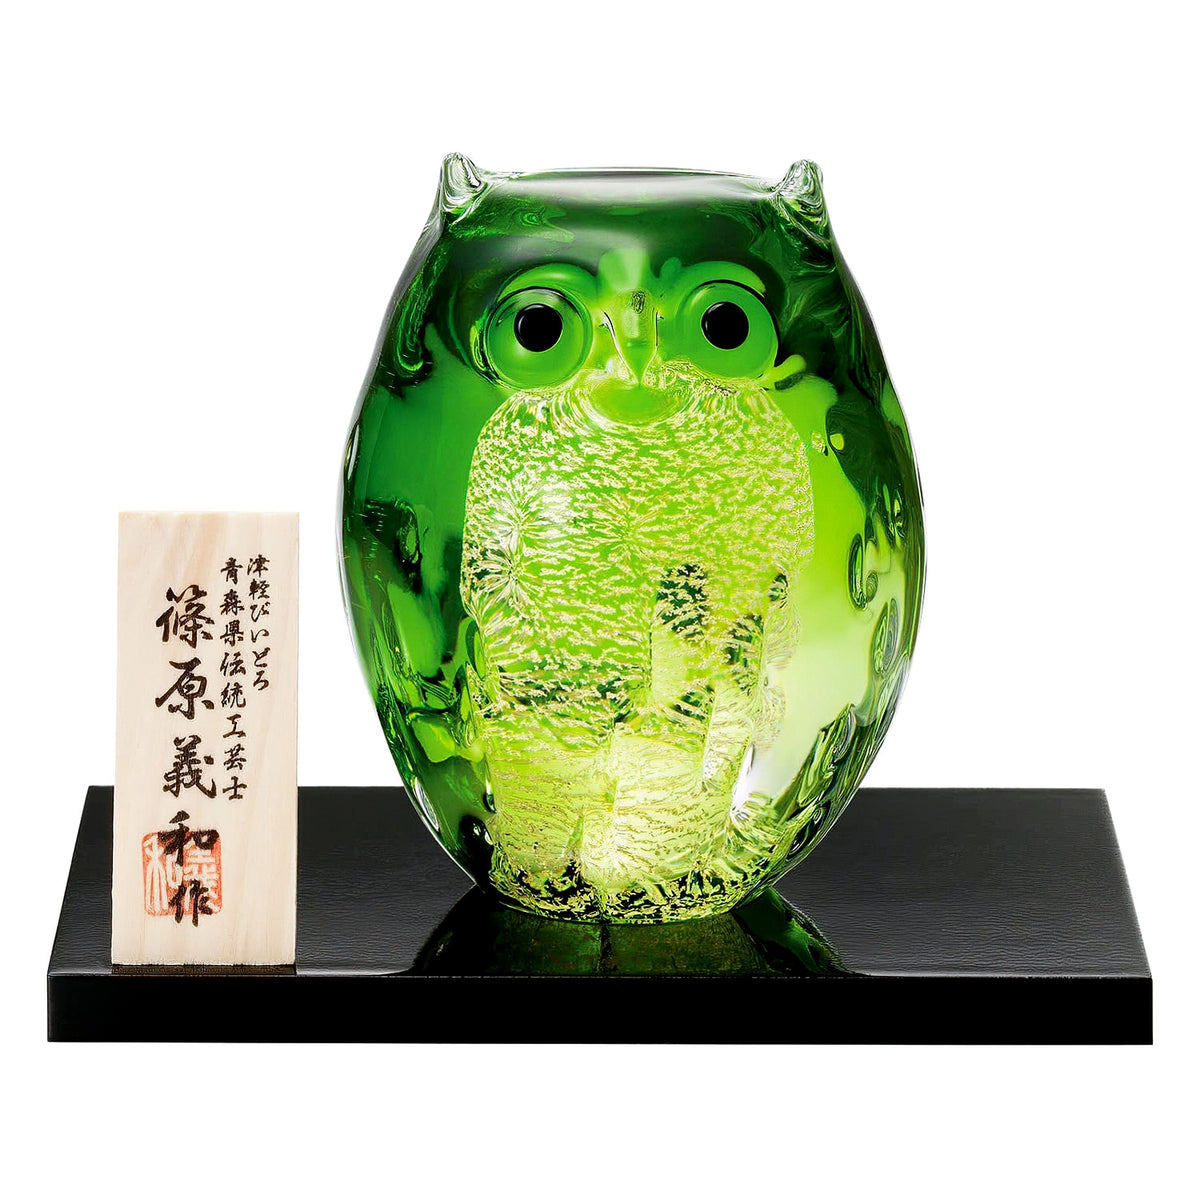 ADERIA Tsugaru Vidro Soda-Lime Glass Parent Owl Ornament